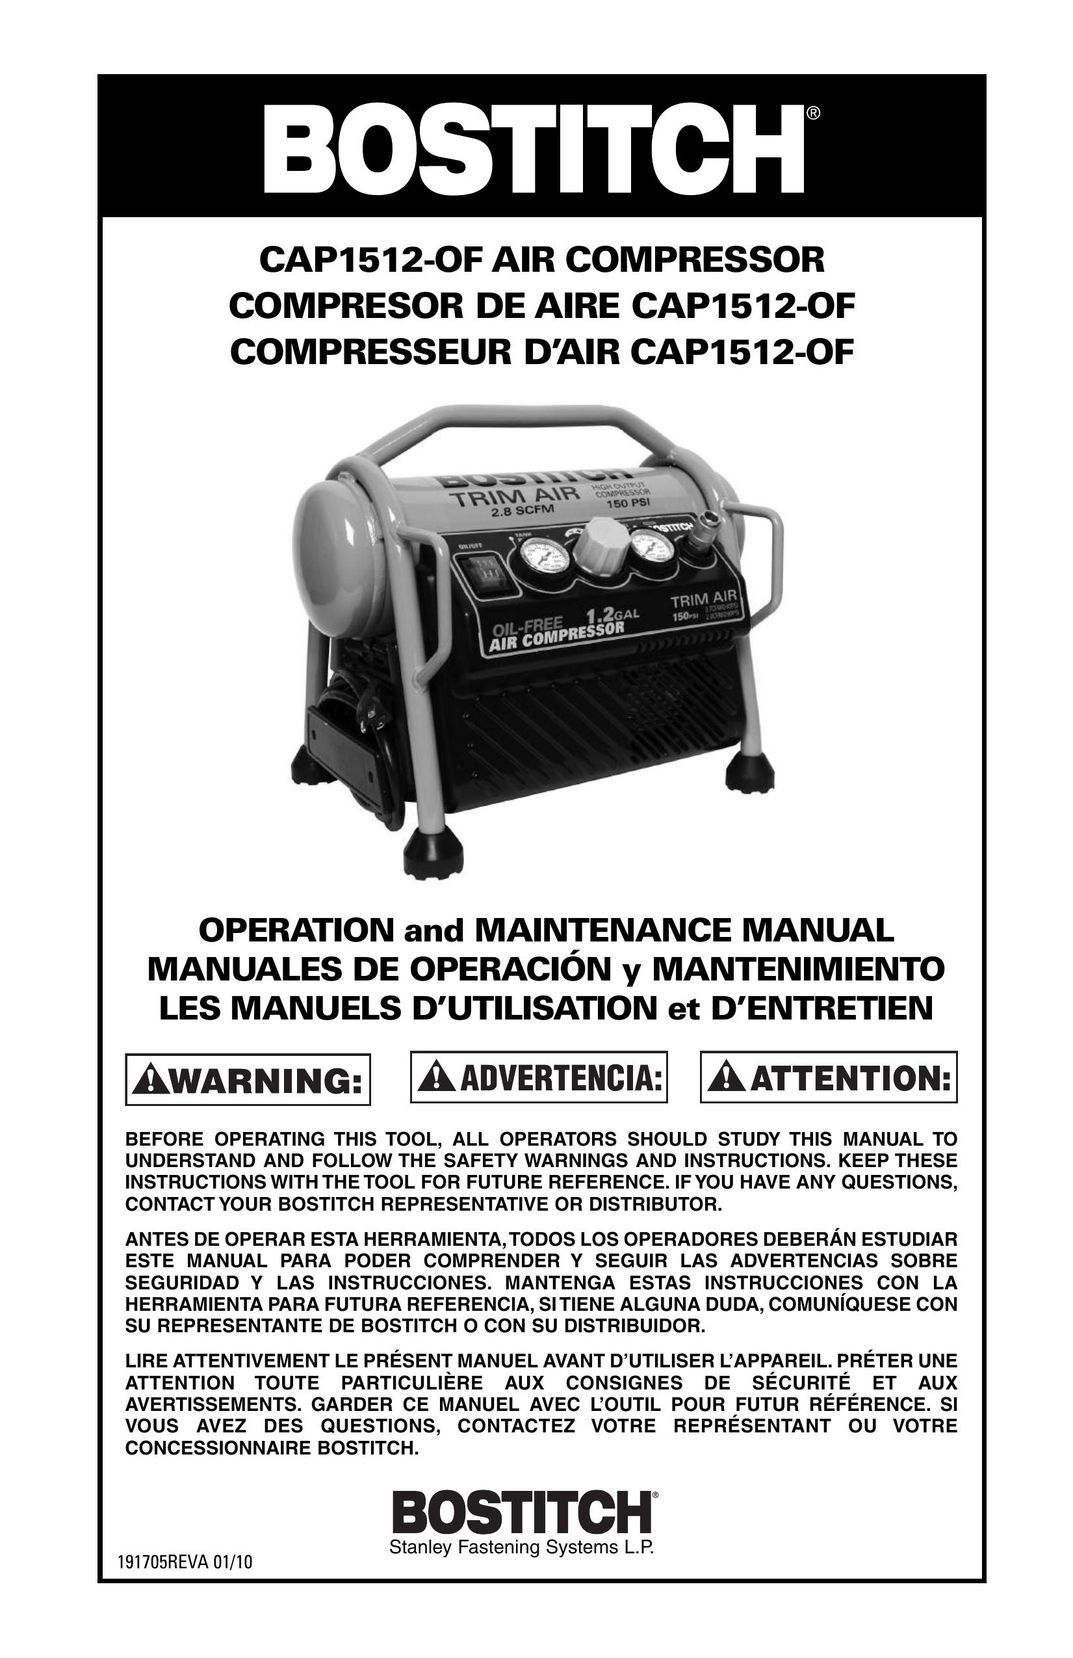 Bostitch CAP1512-OF Air Compressor User Manual